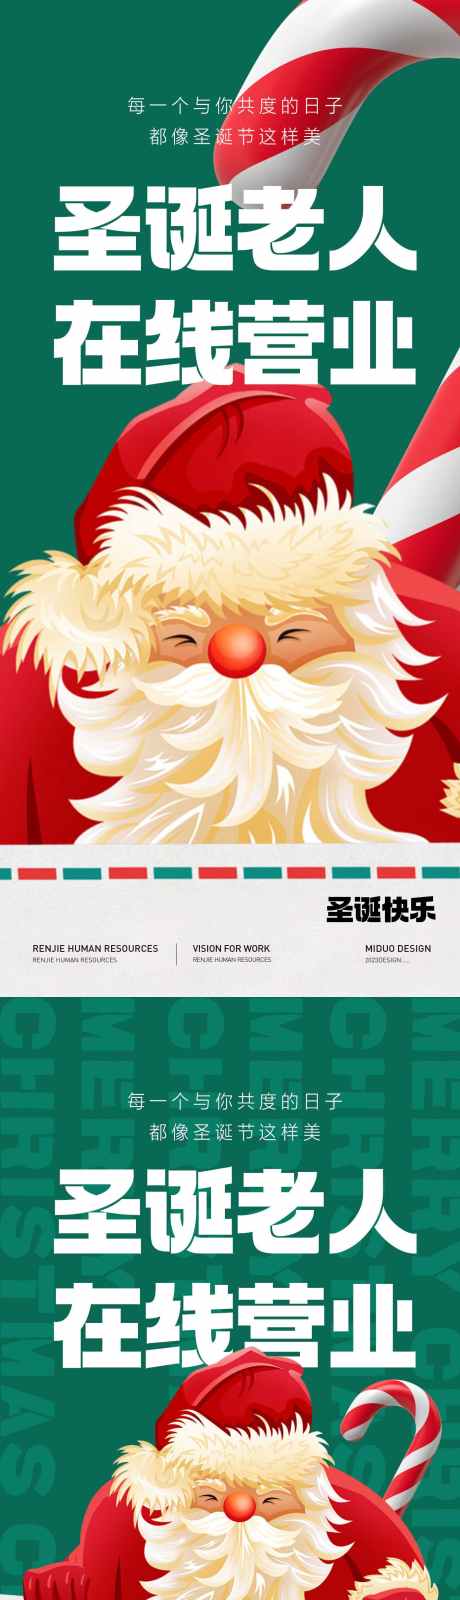 圣诞节主题海报_源文件下载_PSD格式_1417X6142像素-圣诞,海报,圣诞节,老人,礼物,卡通,平安夜-作品编号:2023121217513705-志设-zs9.com